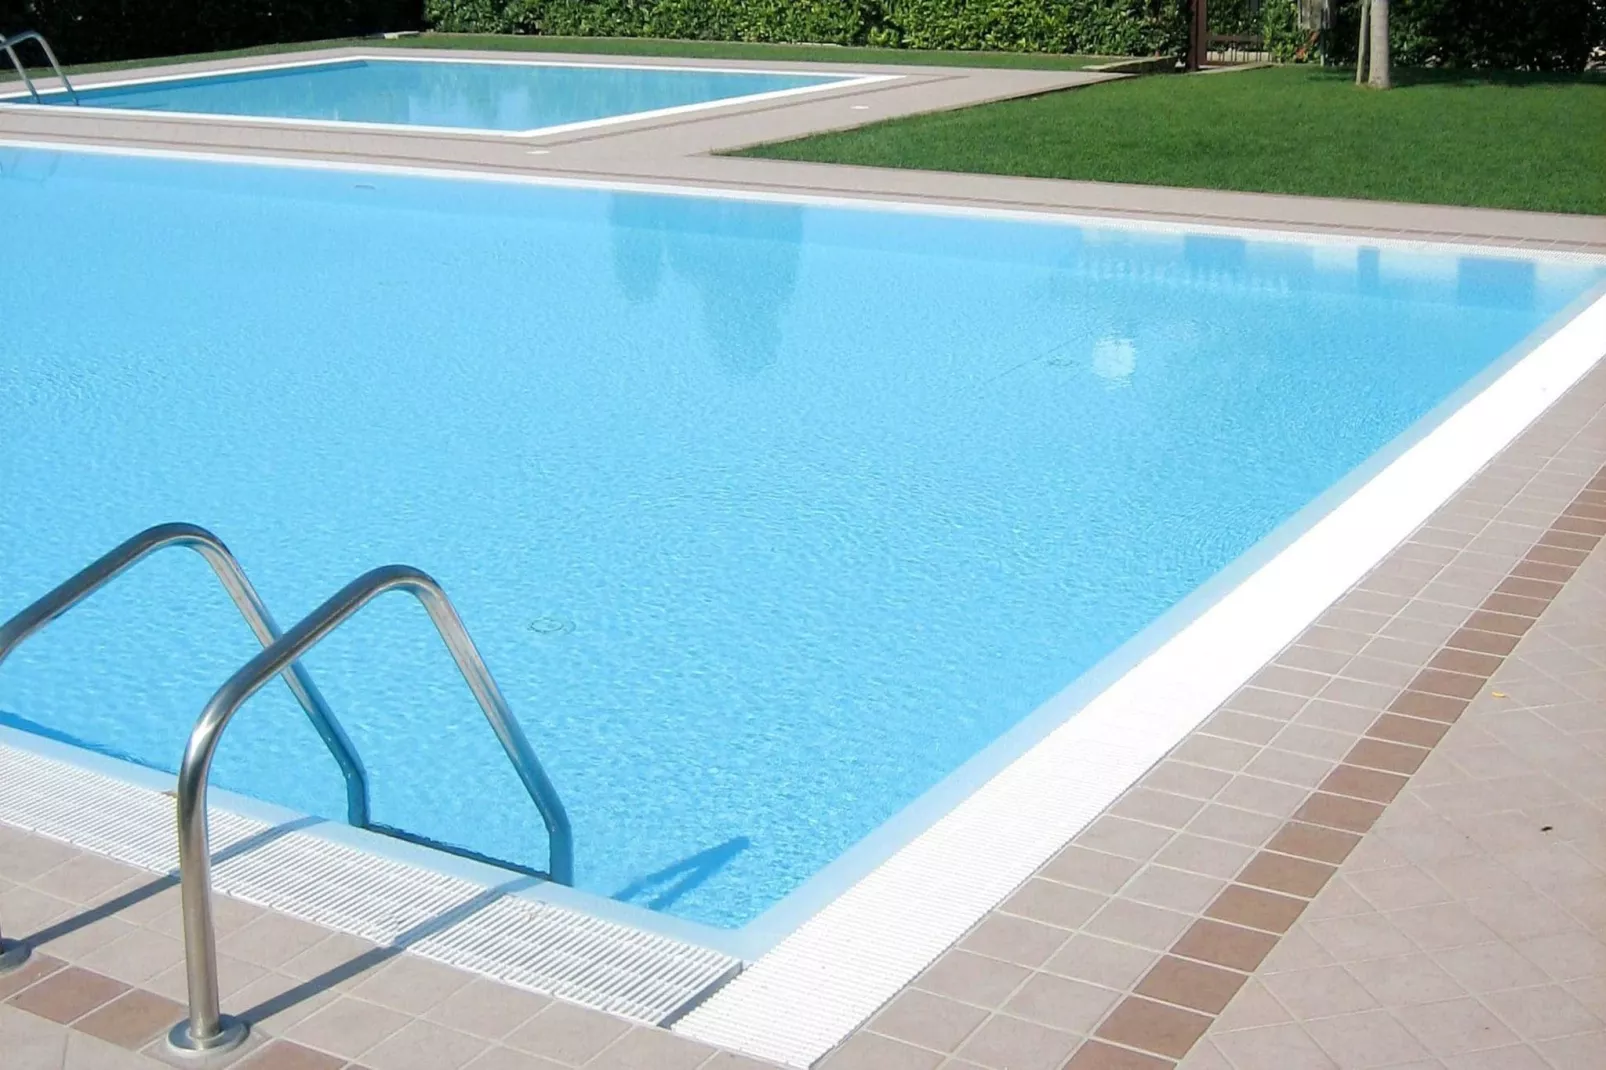 Mooie residentie met 2 zwembaden, ideaal voor gezinnen met kinderen-Zwembad